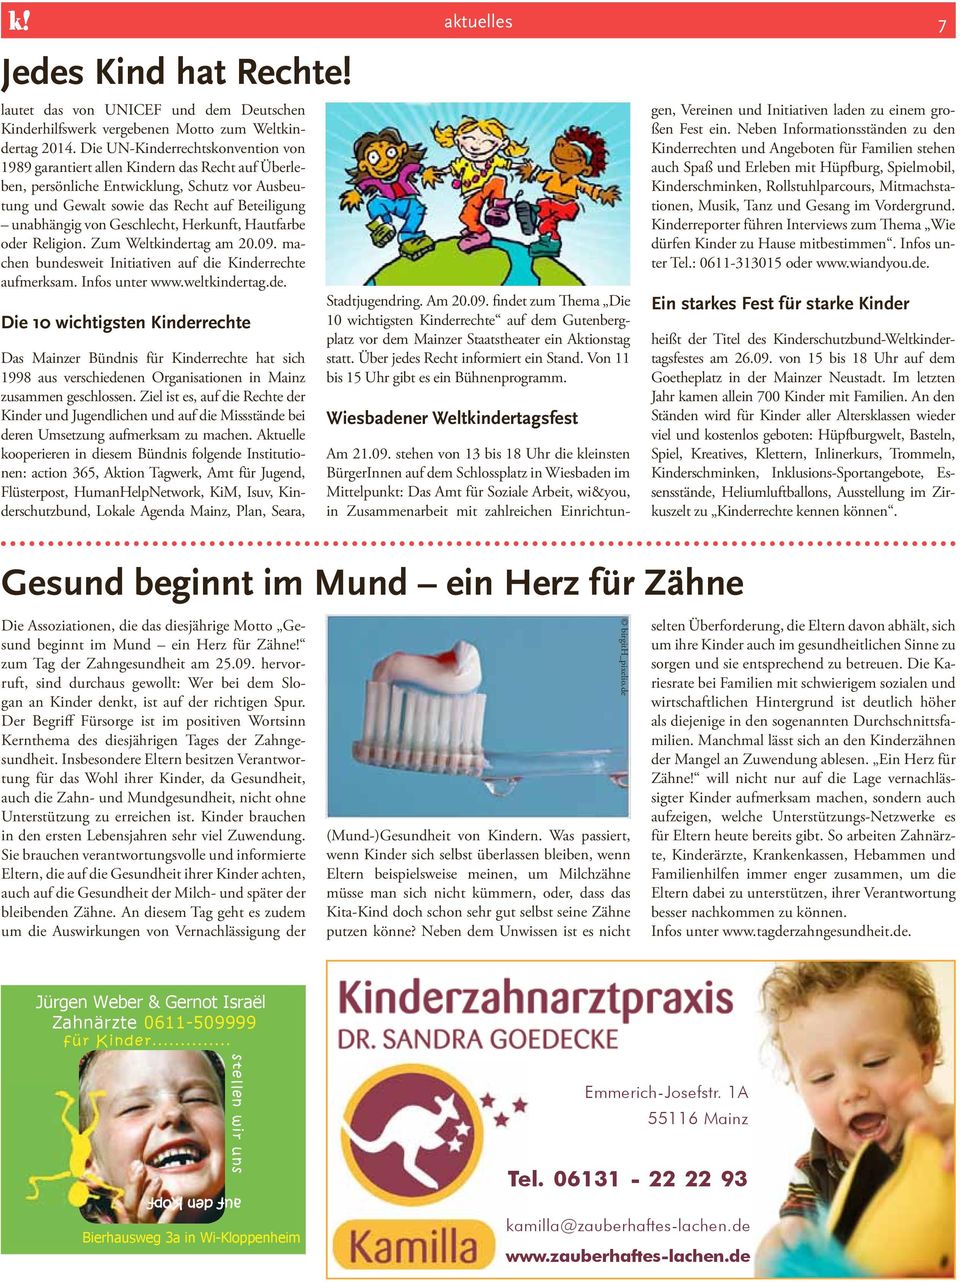 UNICEF und dem Deutschen Kinderhilfswerk vergebenen Motto zum Weltkindertag 2014.